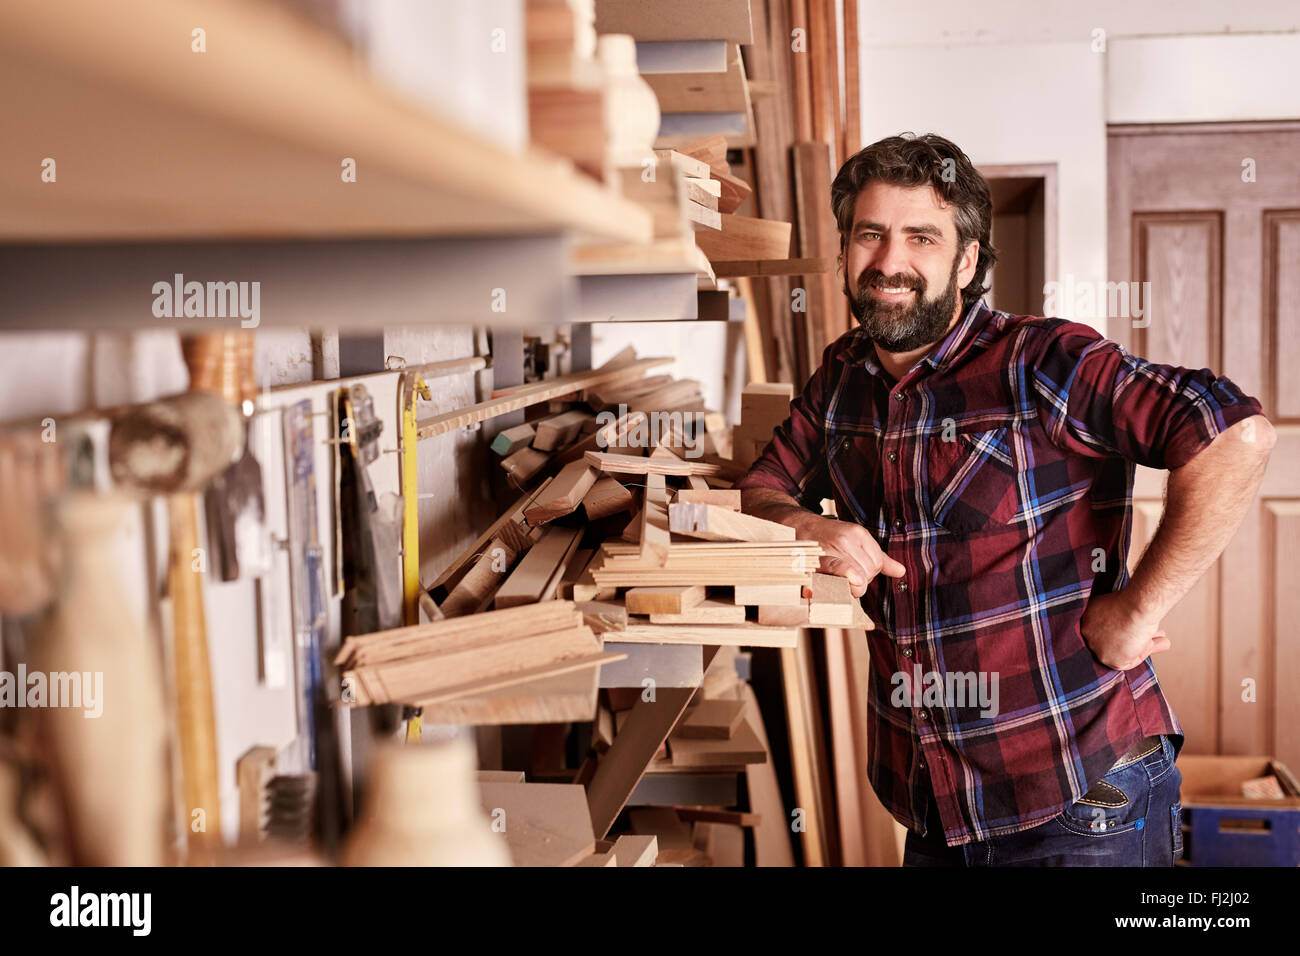 Zimmerei Geschäft Inhaber stand lächelnd in seiner Werkstatt Stockfoto